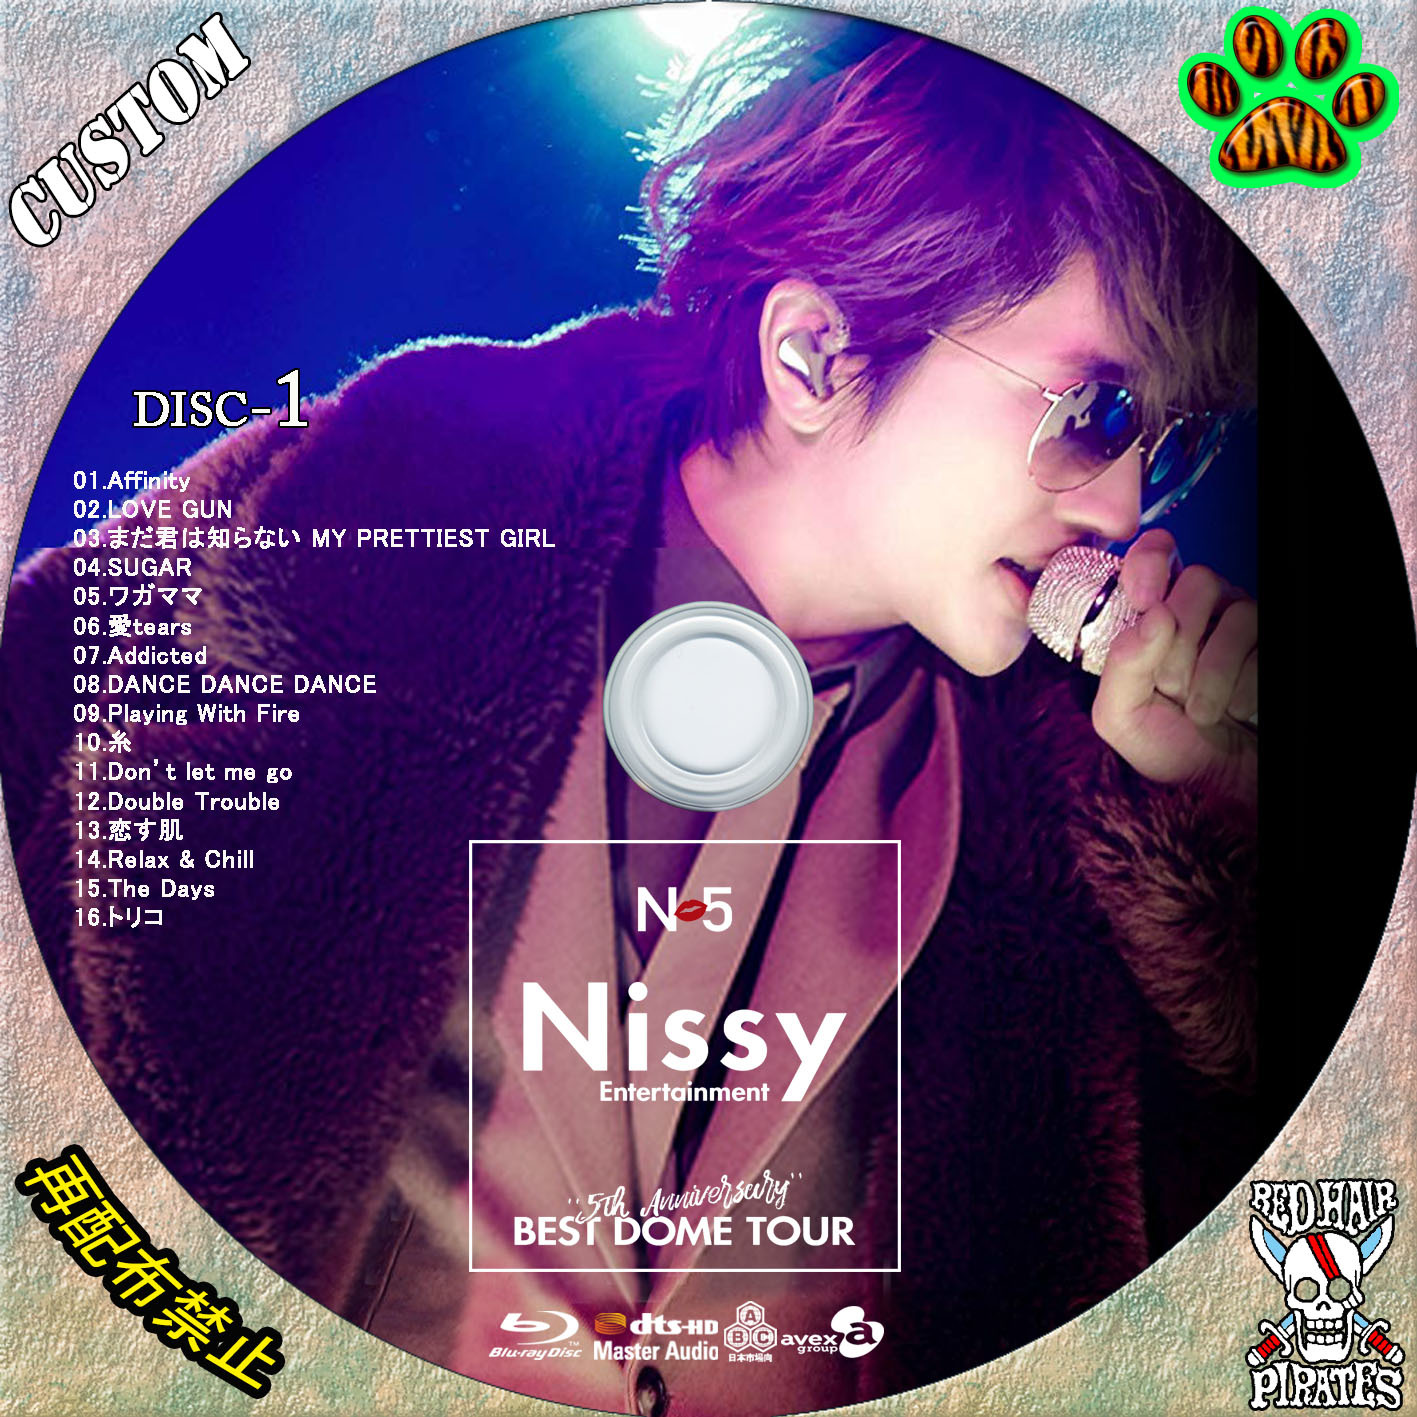 てです AAA - Nissy 5th Anniversary BEST DVDの通販 by みぃ's shop